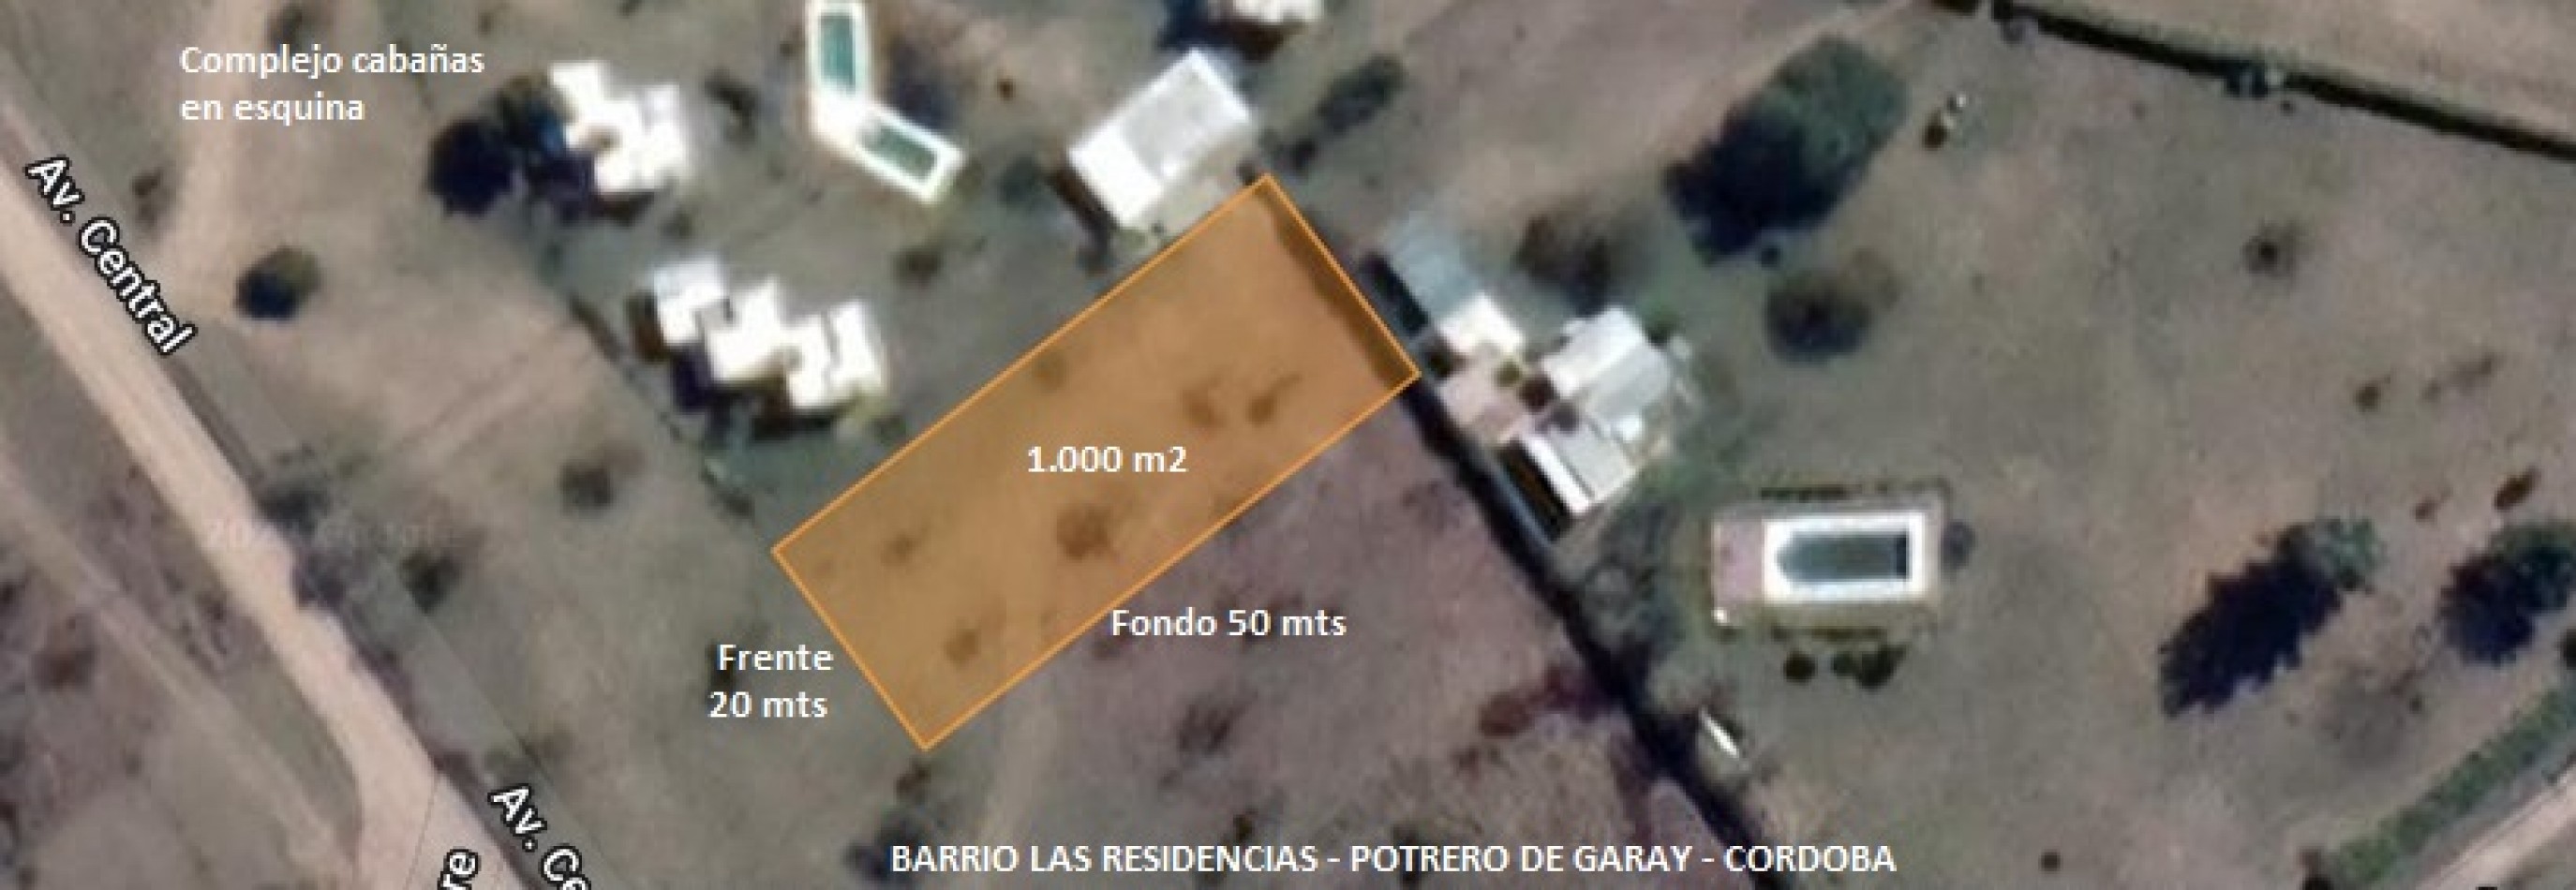 TERRENO 1.000 m2 A METROS LAGO LOS MOLINOS-POTRERO DE GARAY-CORDOBA-ESCRITURA